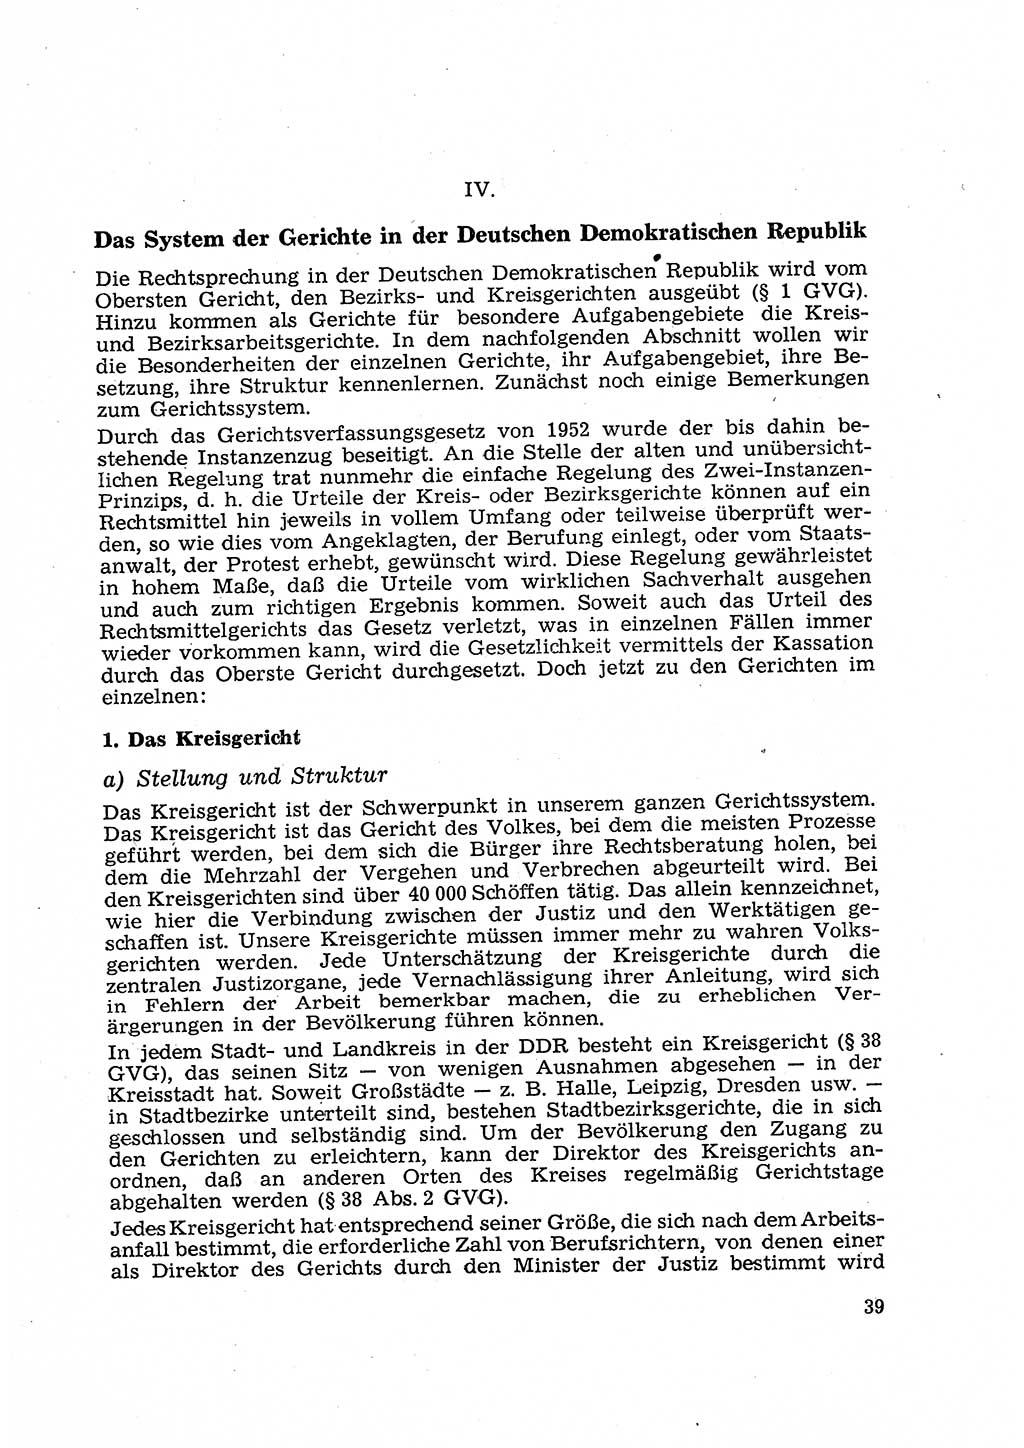 Gericht und Rechtsprechung in der Deutschen Demokratischen Republik (DDR) 1956, Seite 39 (Ger. Rechtspr. DDR 1956, S. 39)